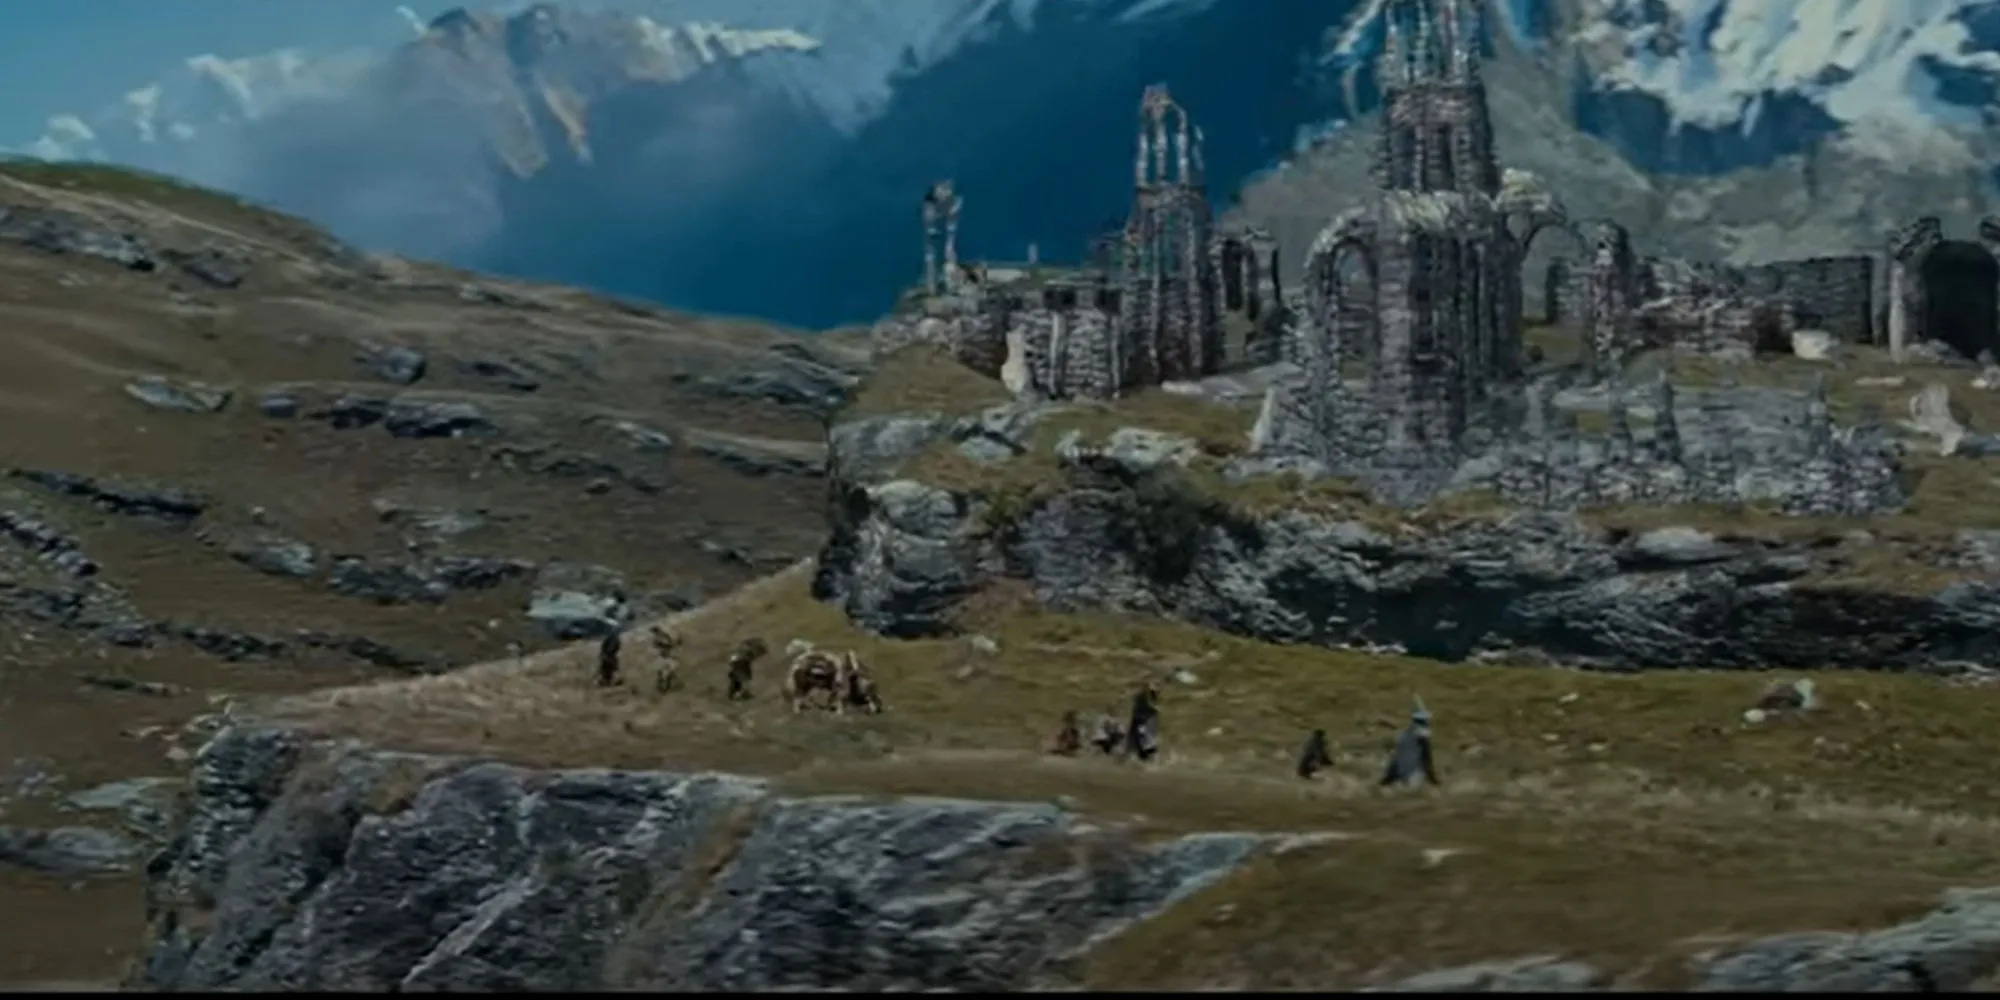 The Fellowship of the Ring が列をなして遺跡のそばを歩いているイメージ